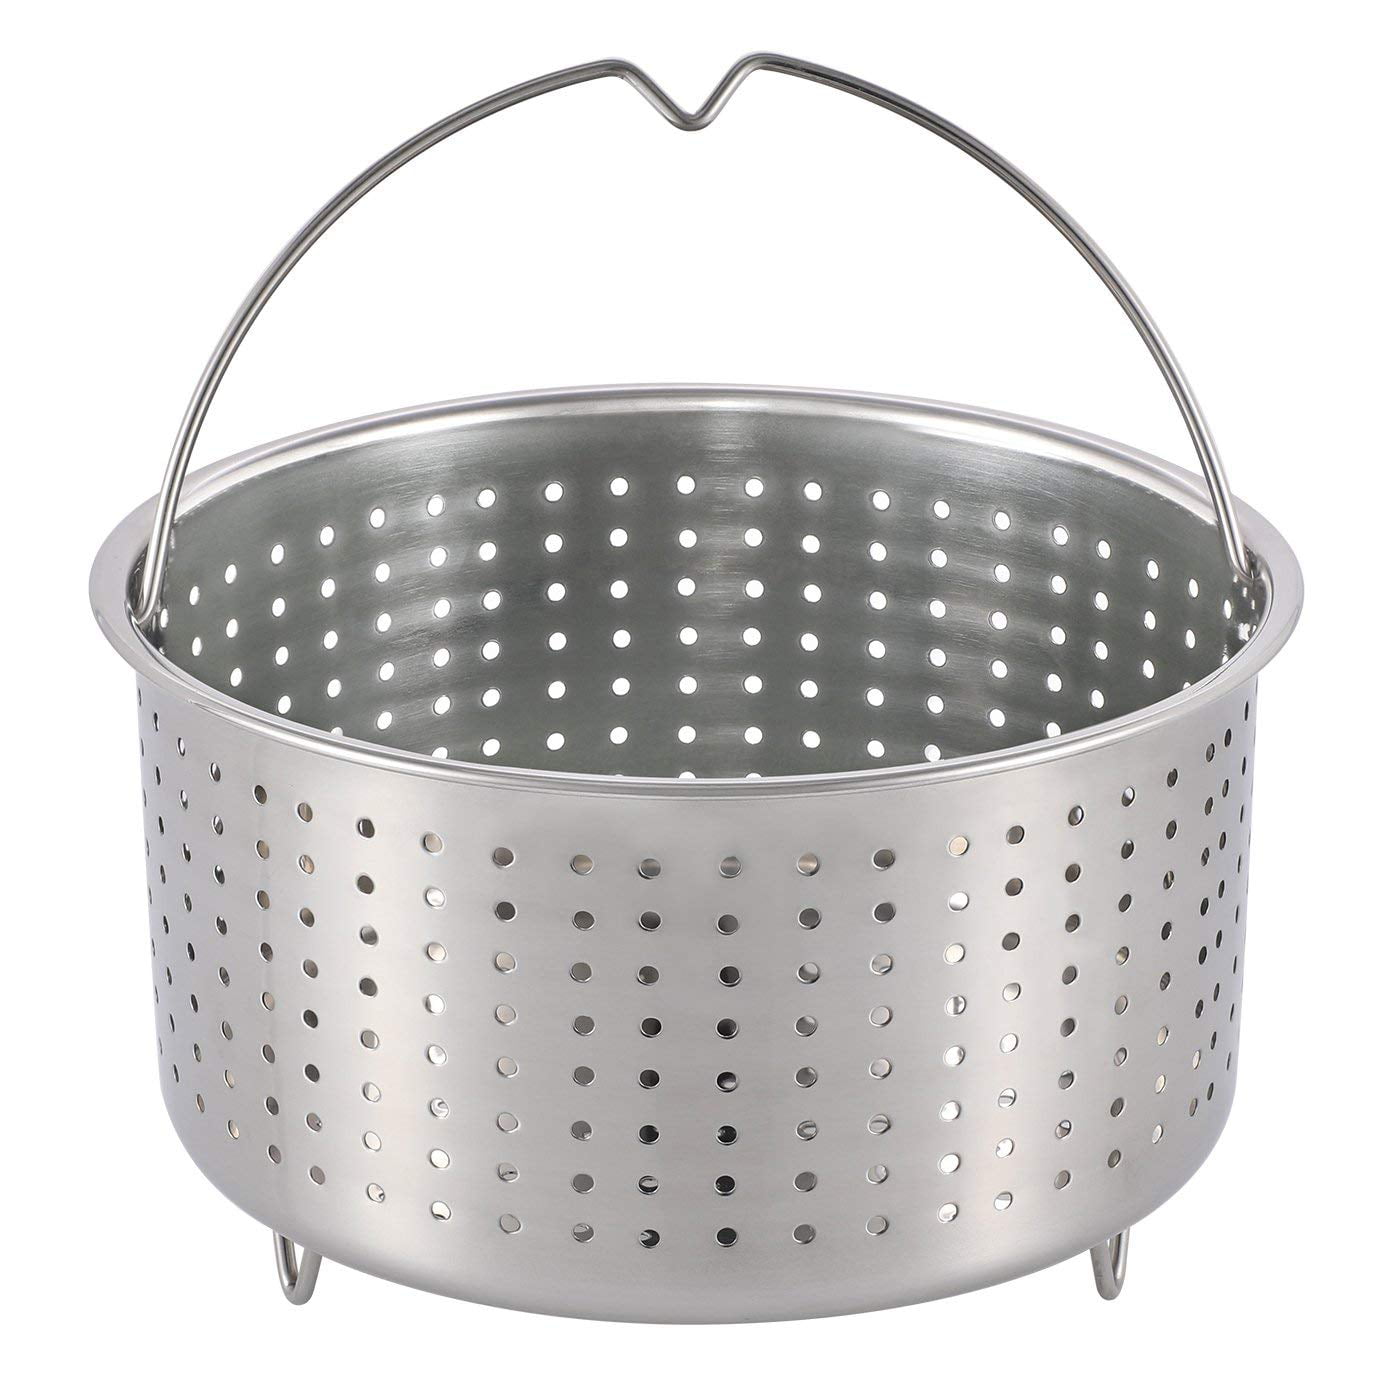 Instant Pot Steamer Basket